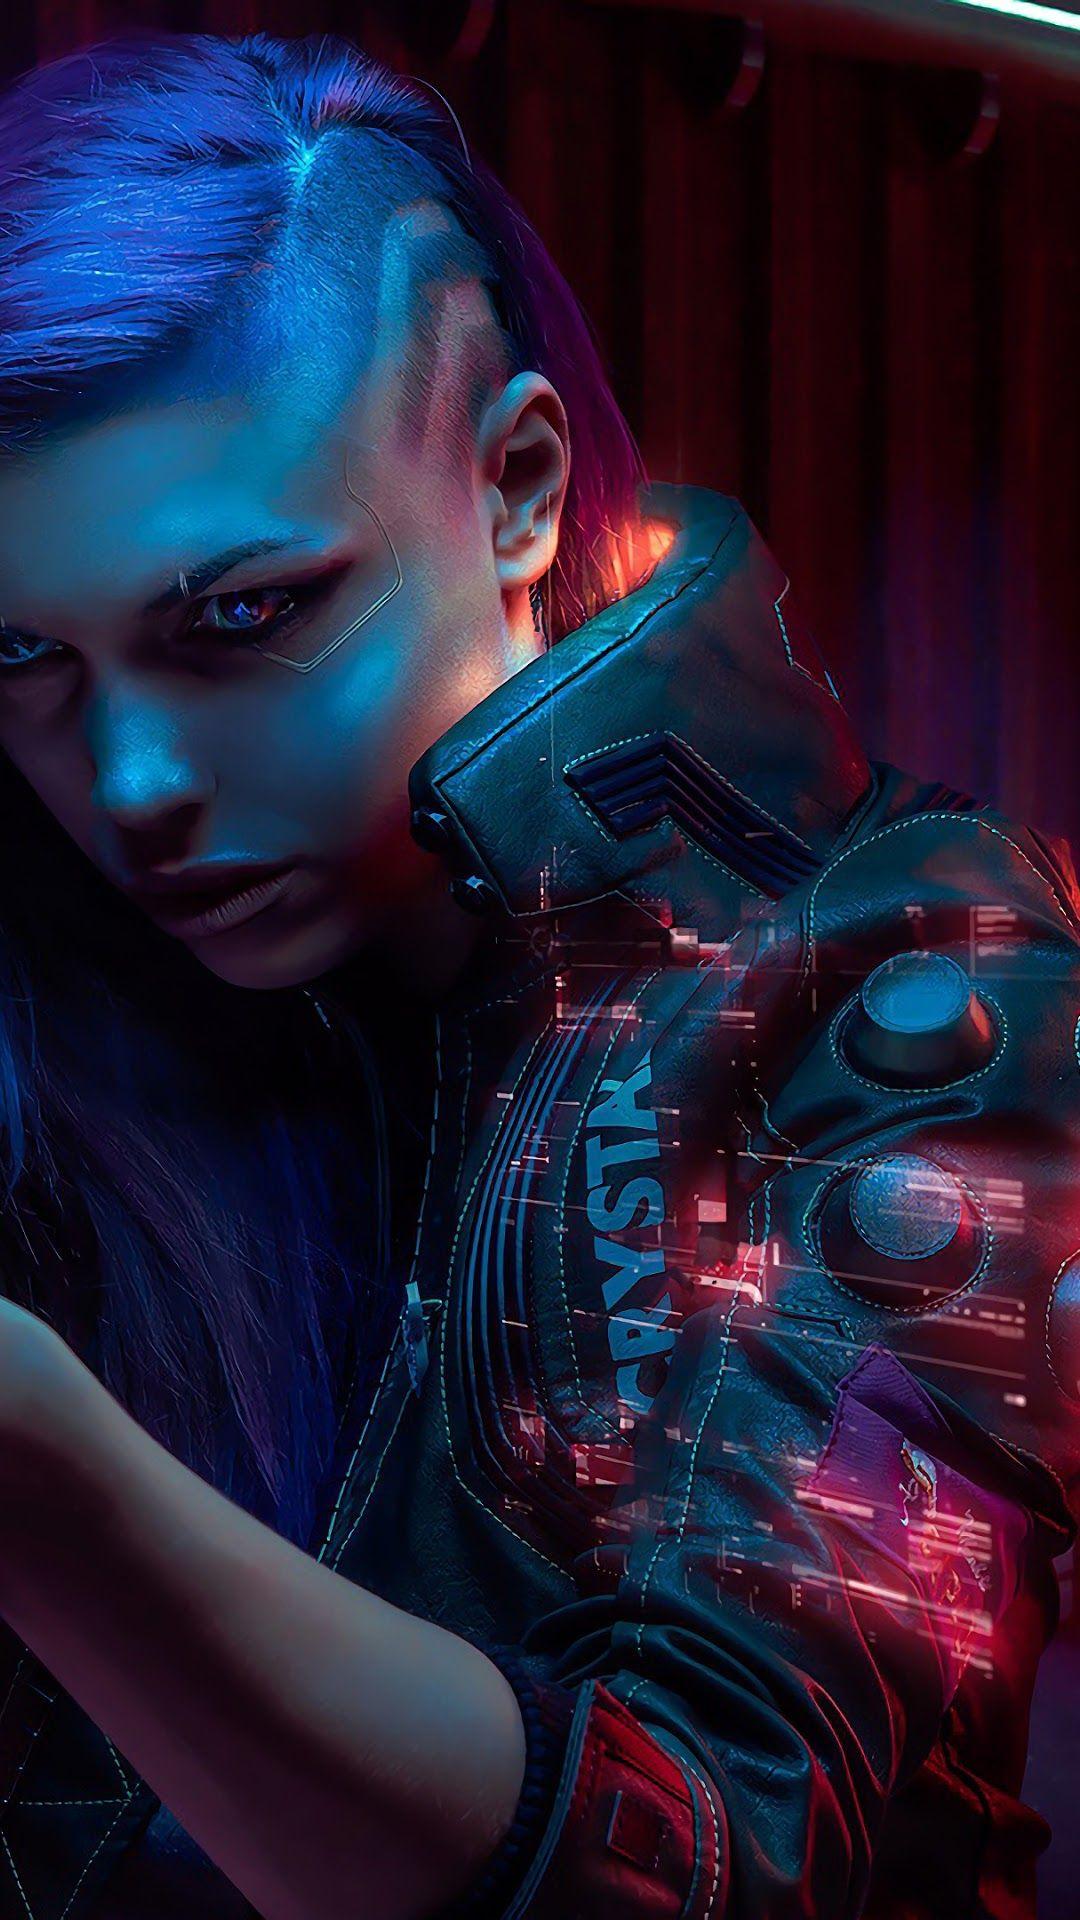 1440p Cyberpunk 2077 Wallpaper